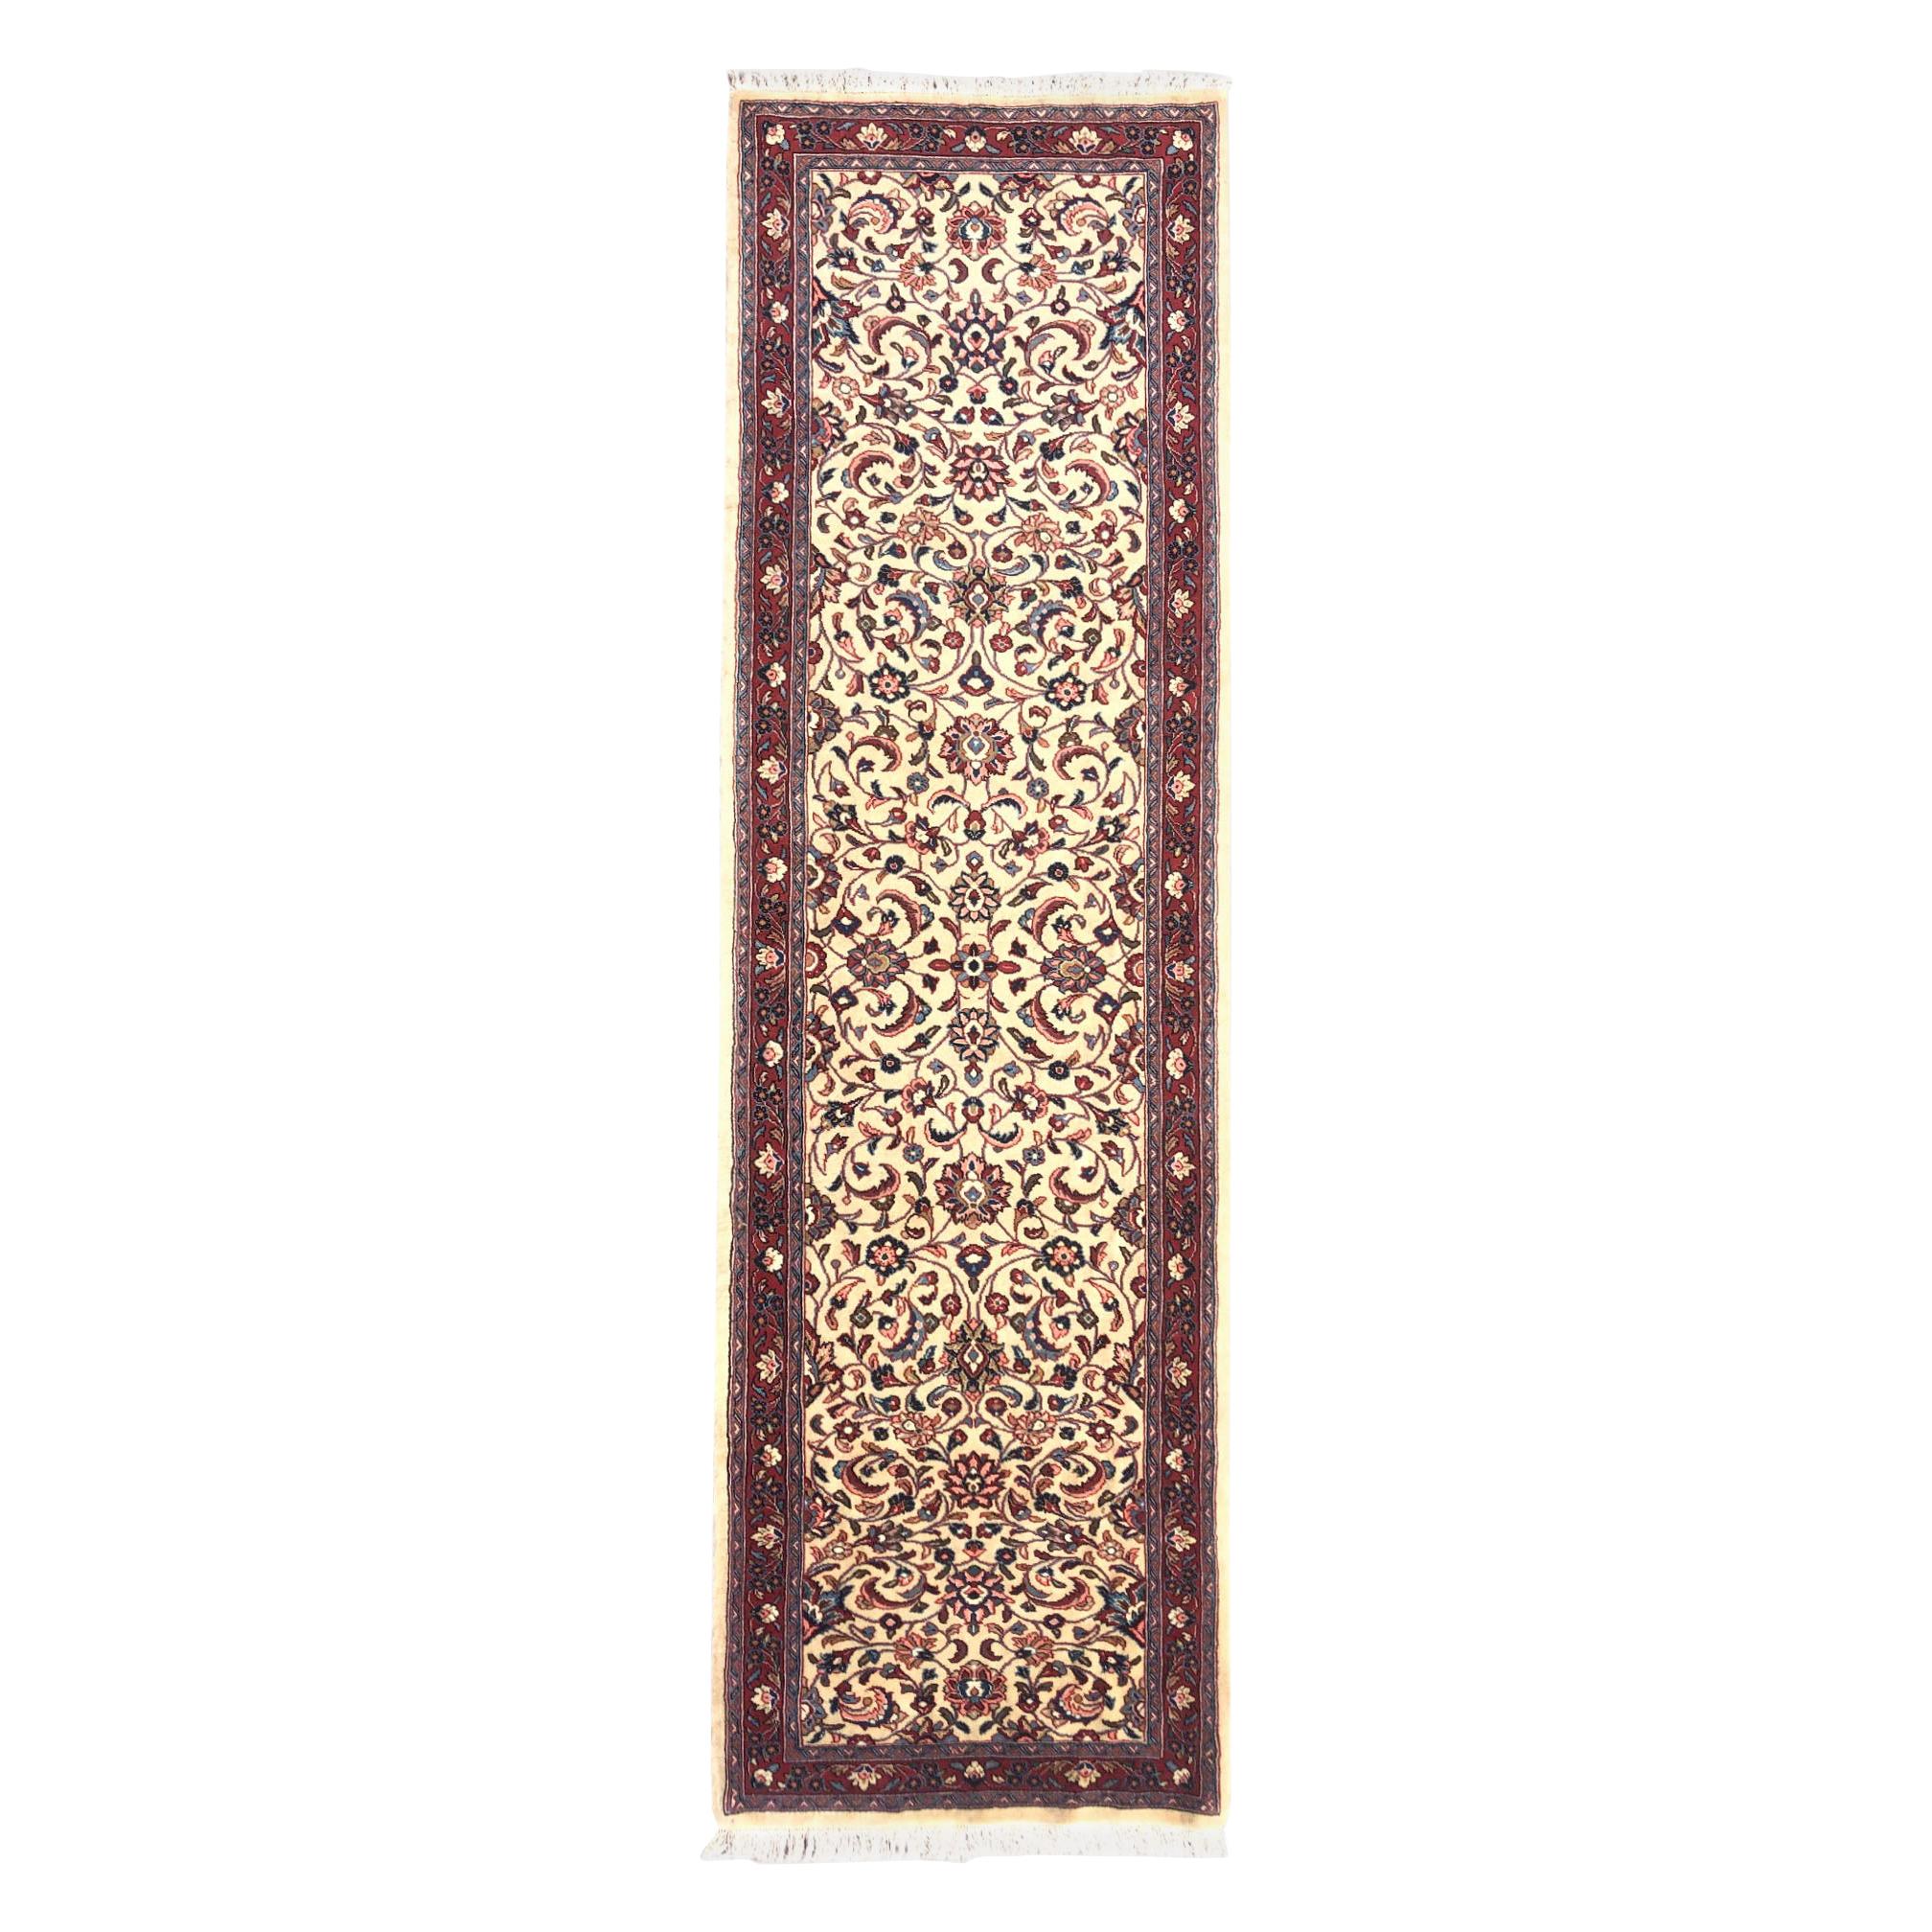 Persischer handgeknüpfter halbfloraler Sarouk-Teppich in Rot und Creme